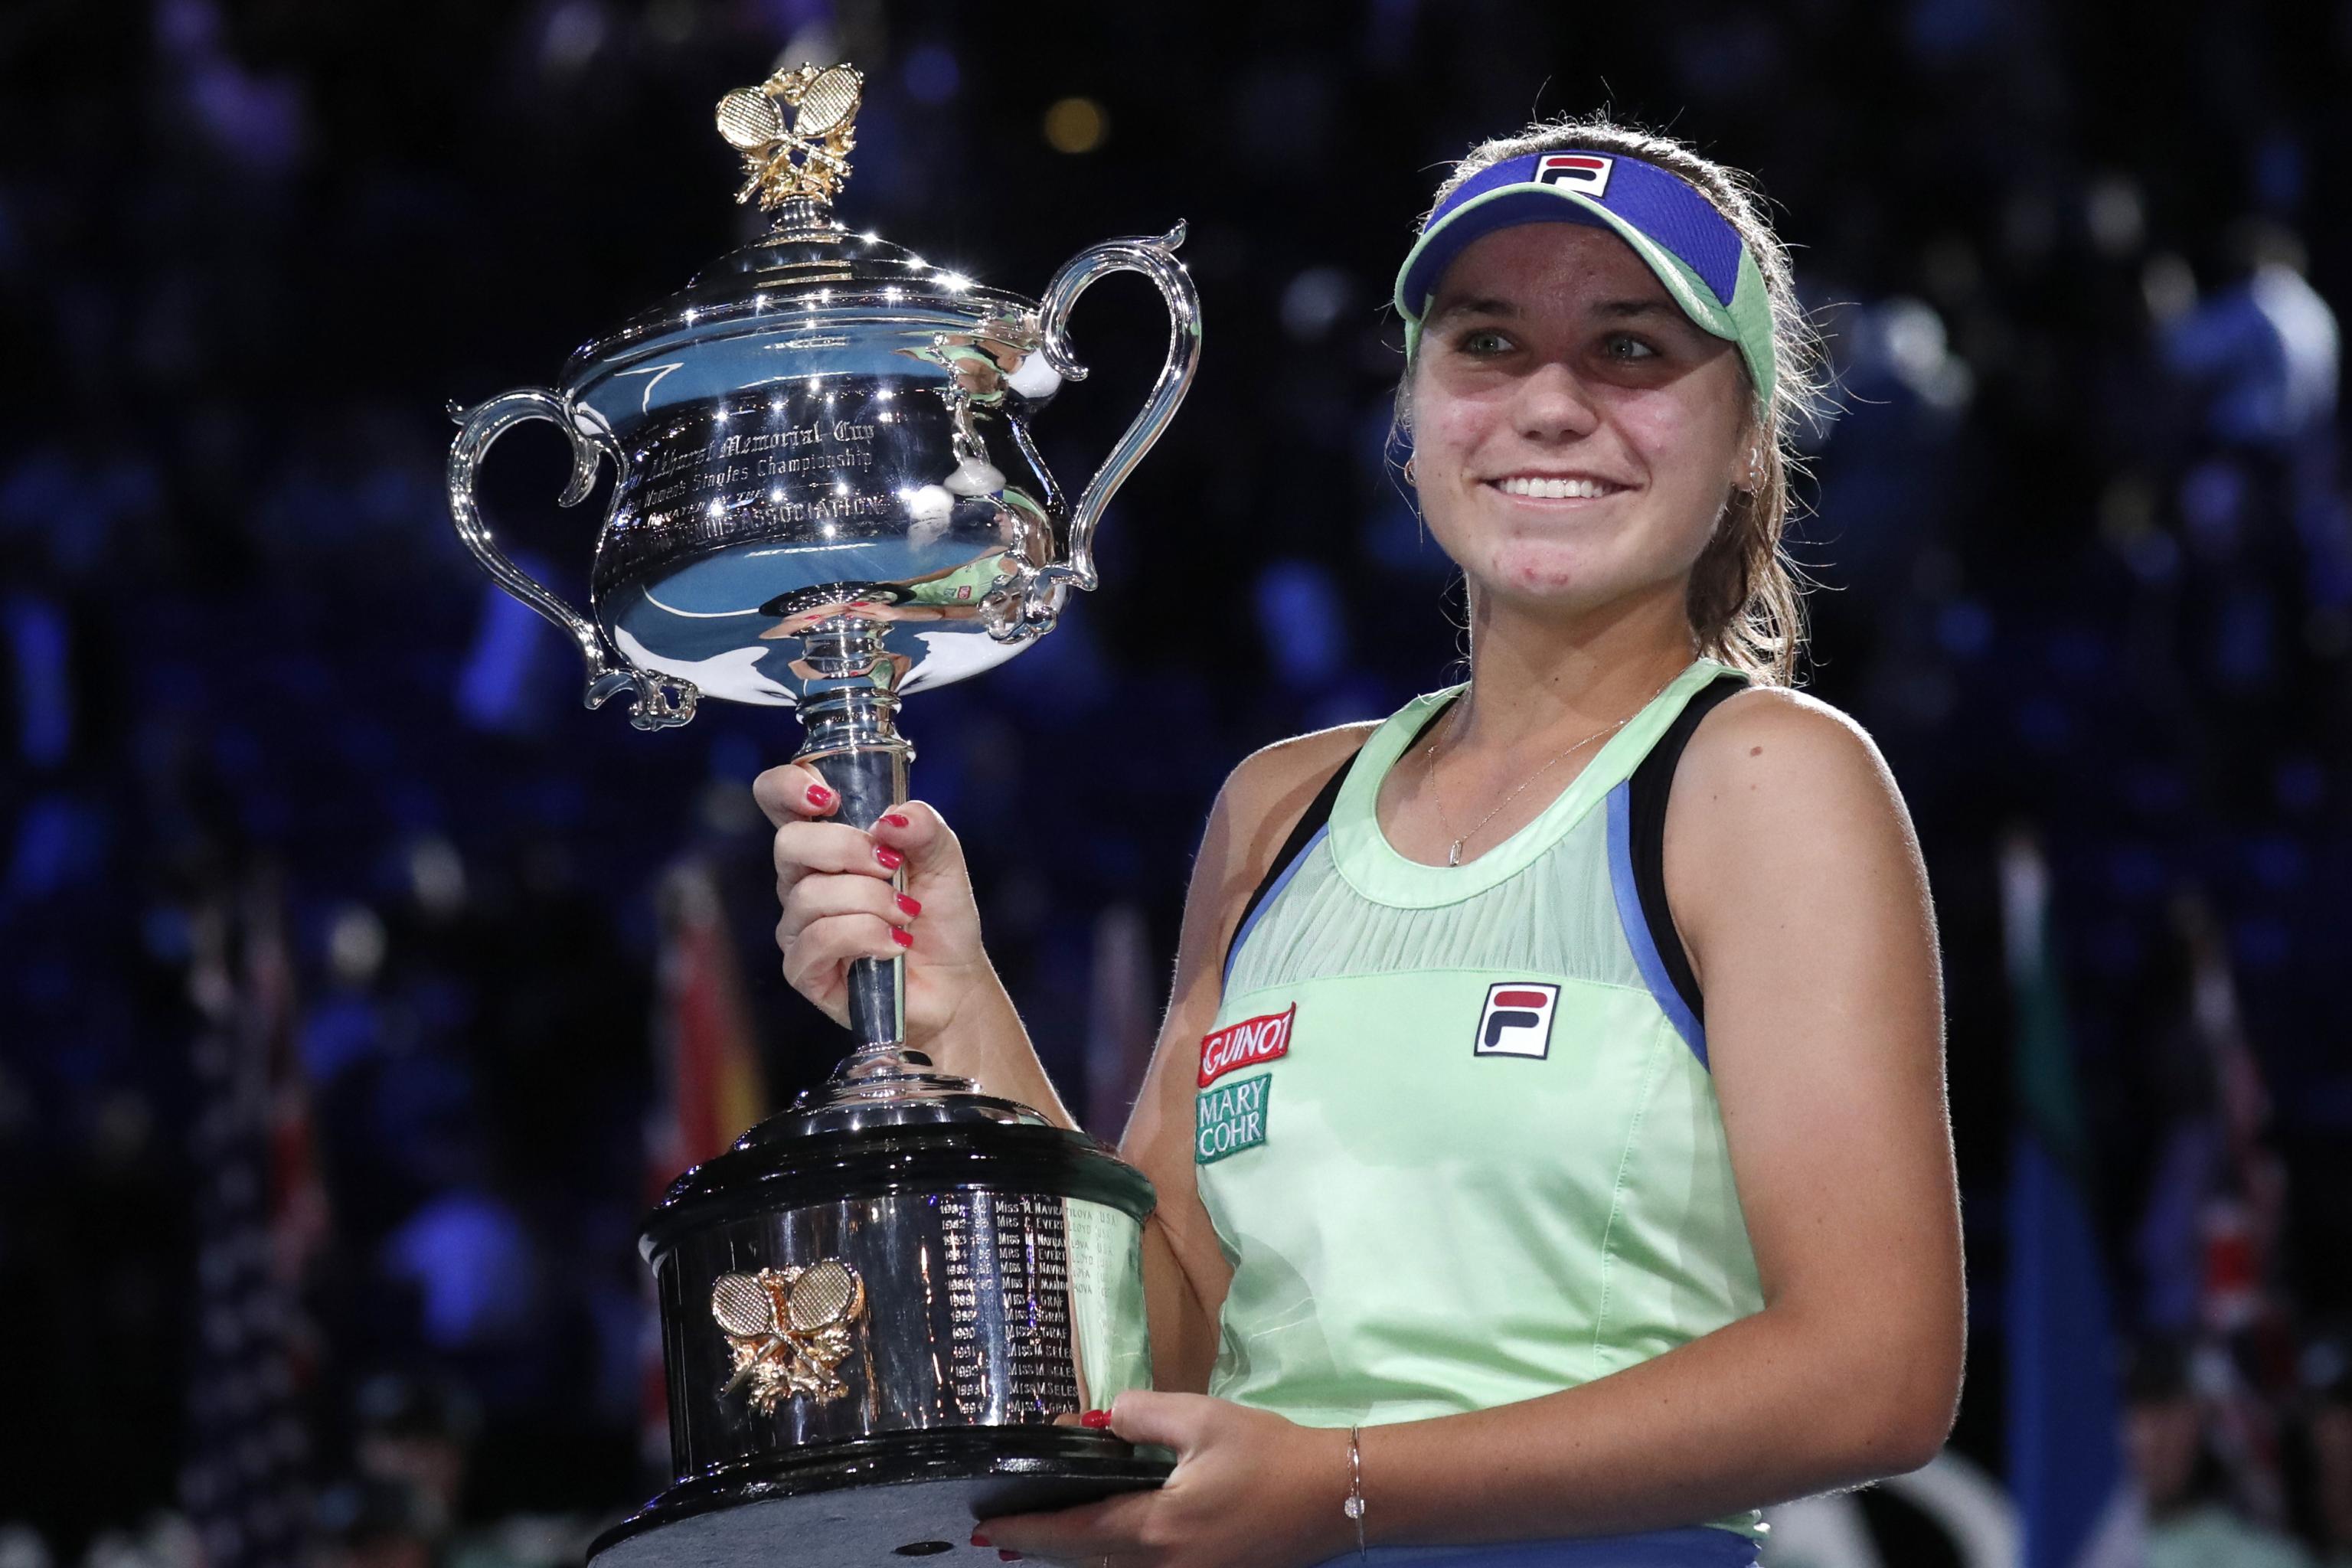 Datum kan opfattes Bevægelig Australian Open 2020 Women's Final: Winner, Score and Twitter Reaction |  Bleacher Report | Latest News, Videos and Highlights